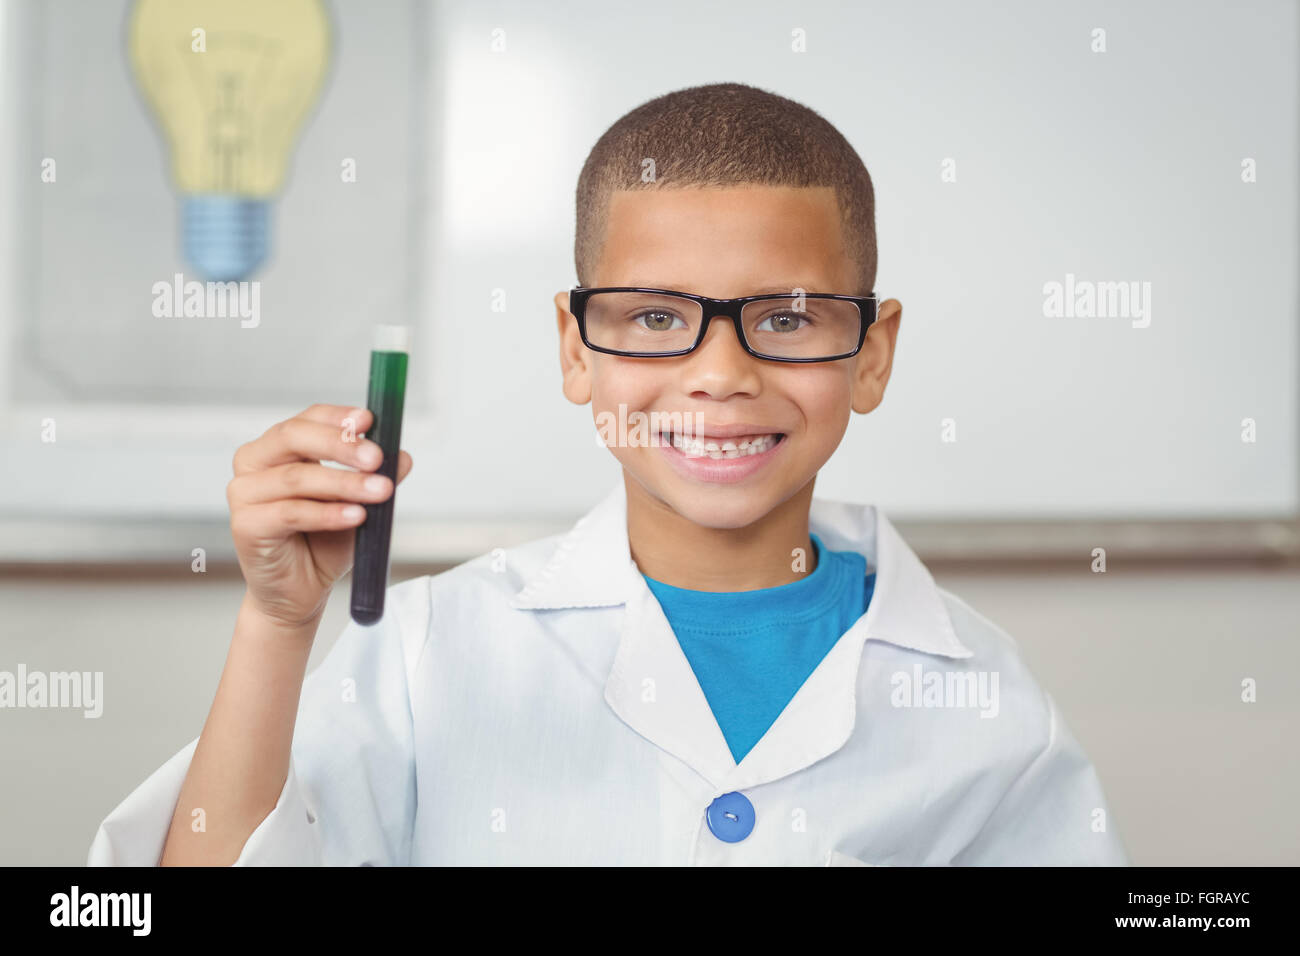 Smiling élève avec lab coat holding test tube Banque D'Images